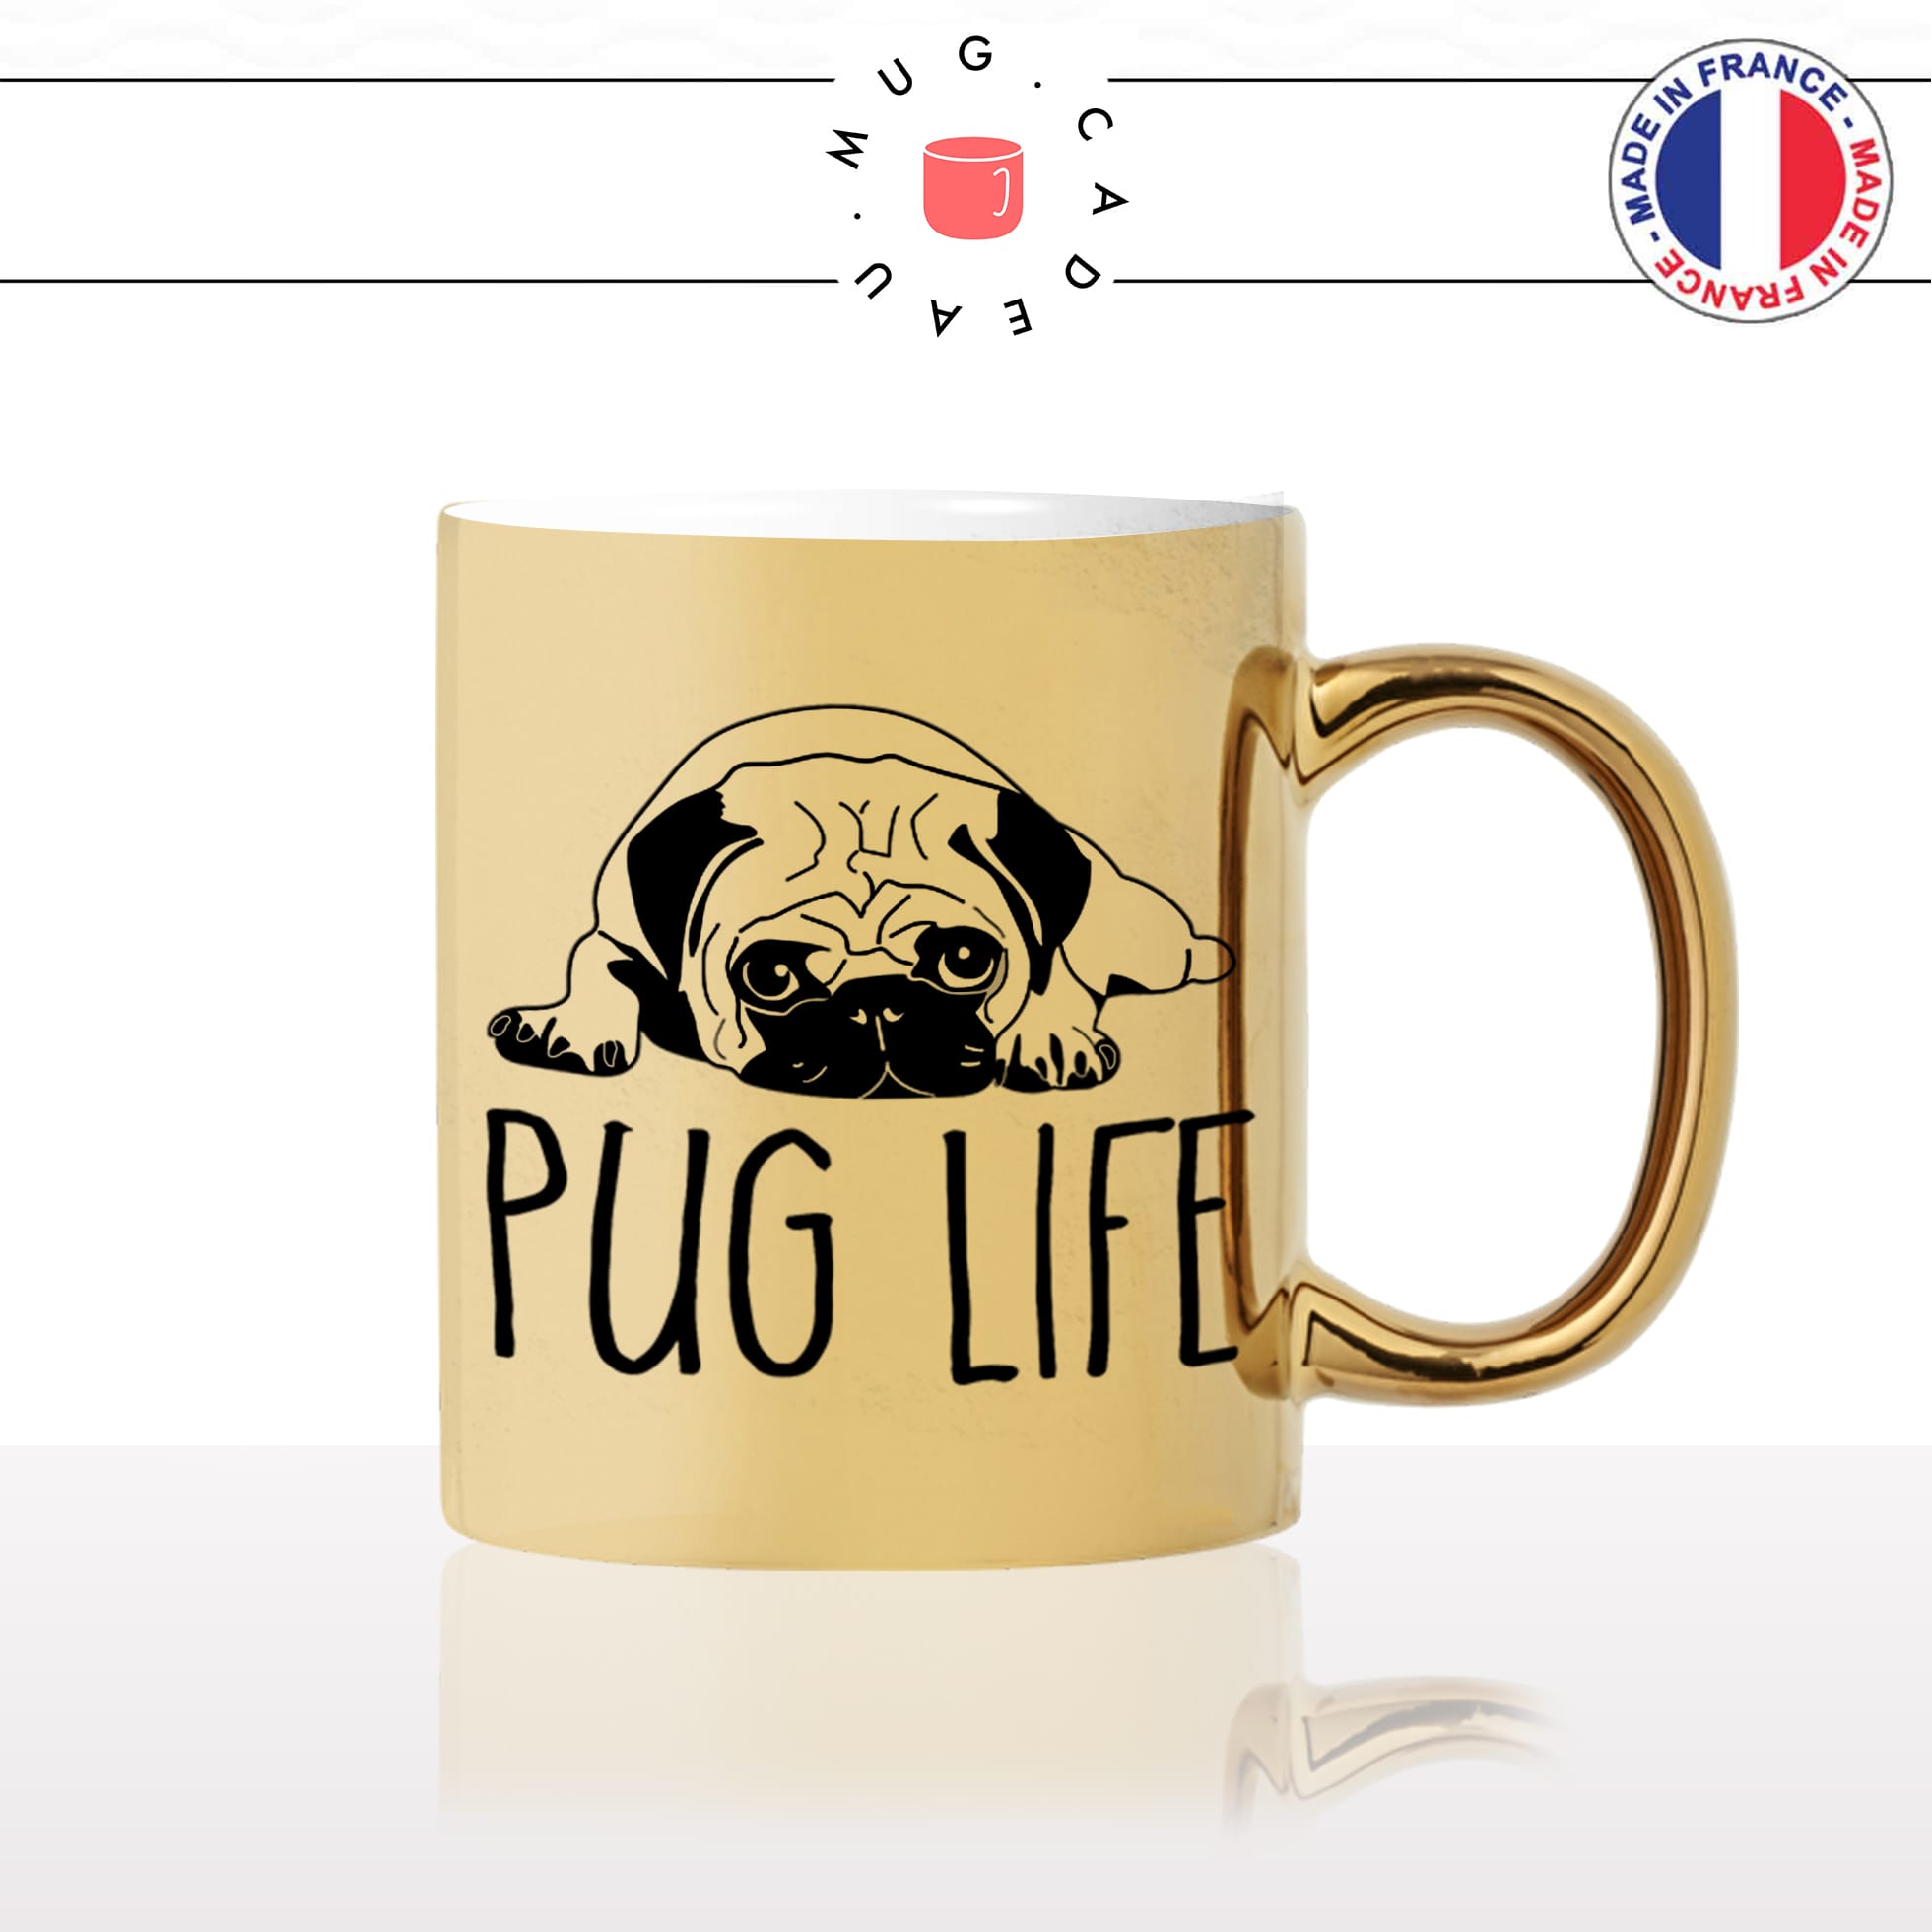 mug-tasse-or-doré-pug-life-race-dog-humour-chien-amour-mignon-animal-chiot-noir-fun-café-thé-idée-cadeau-original-personnalisé-gold2-min